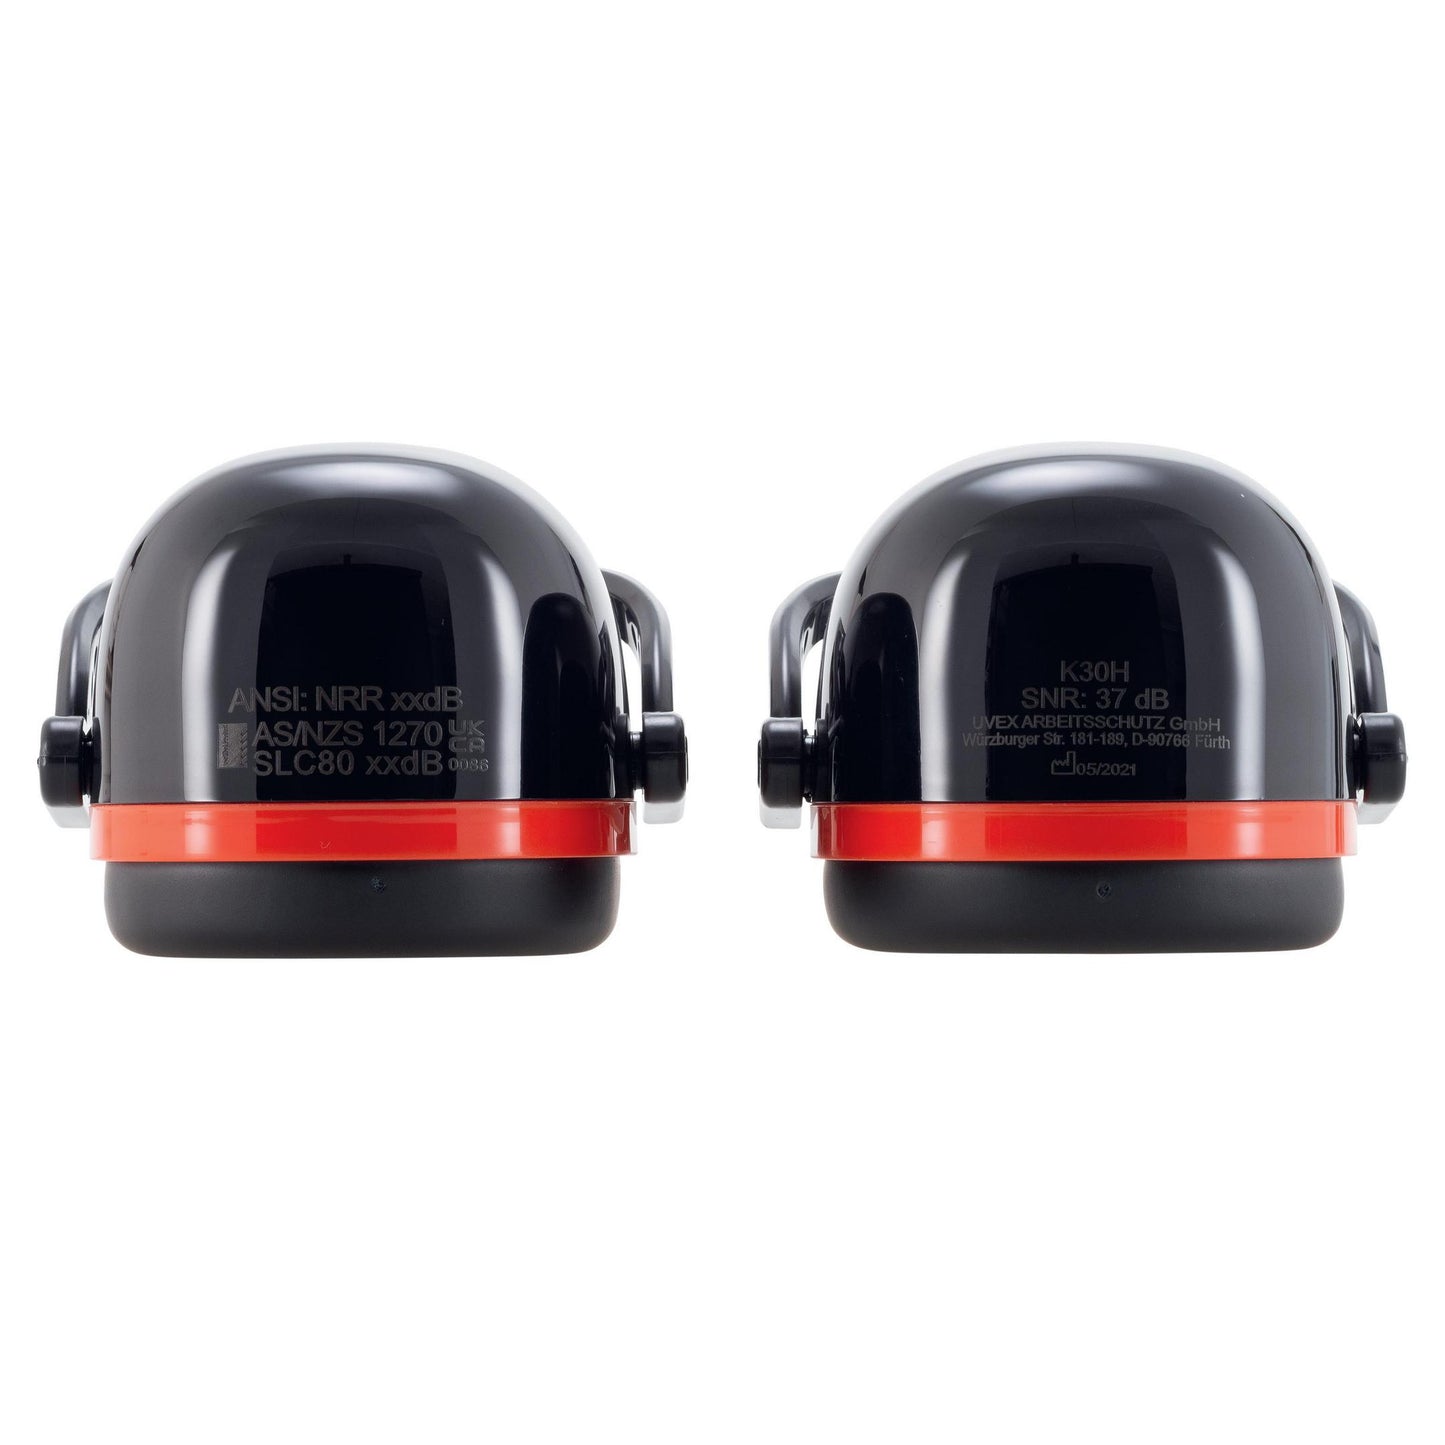 uvex K30H dielektrische Helmkapsel SNR 34 dB